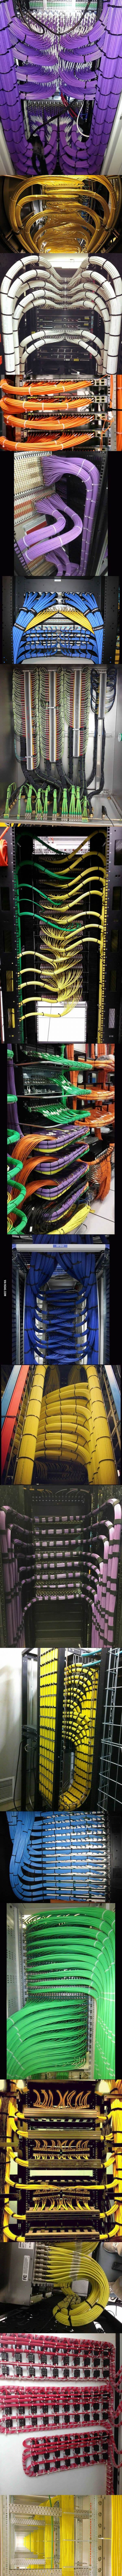 cable management art